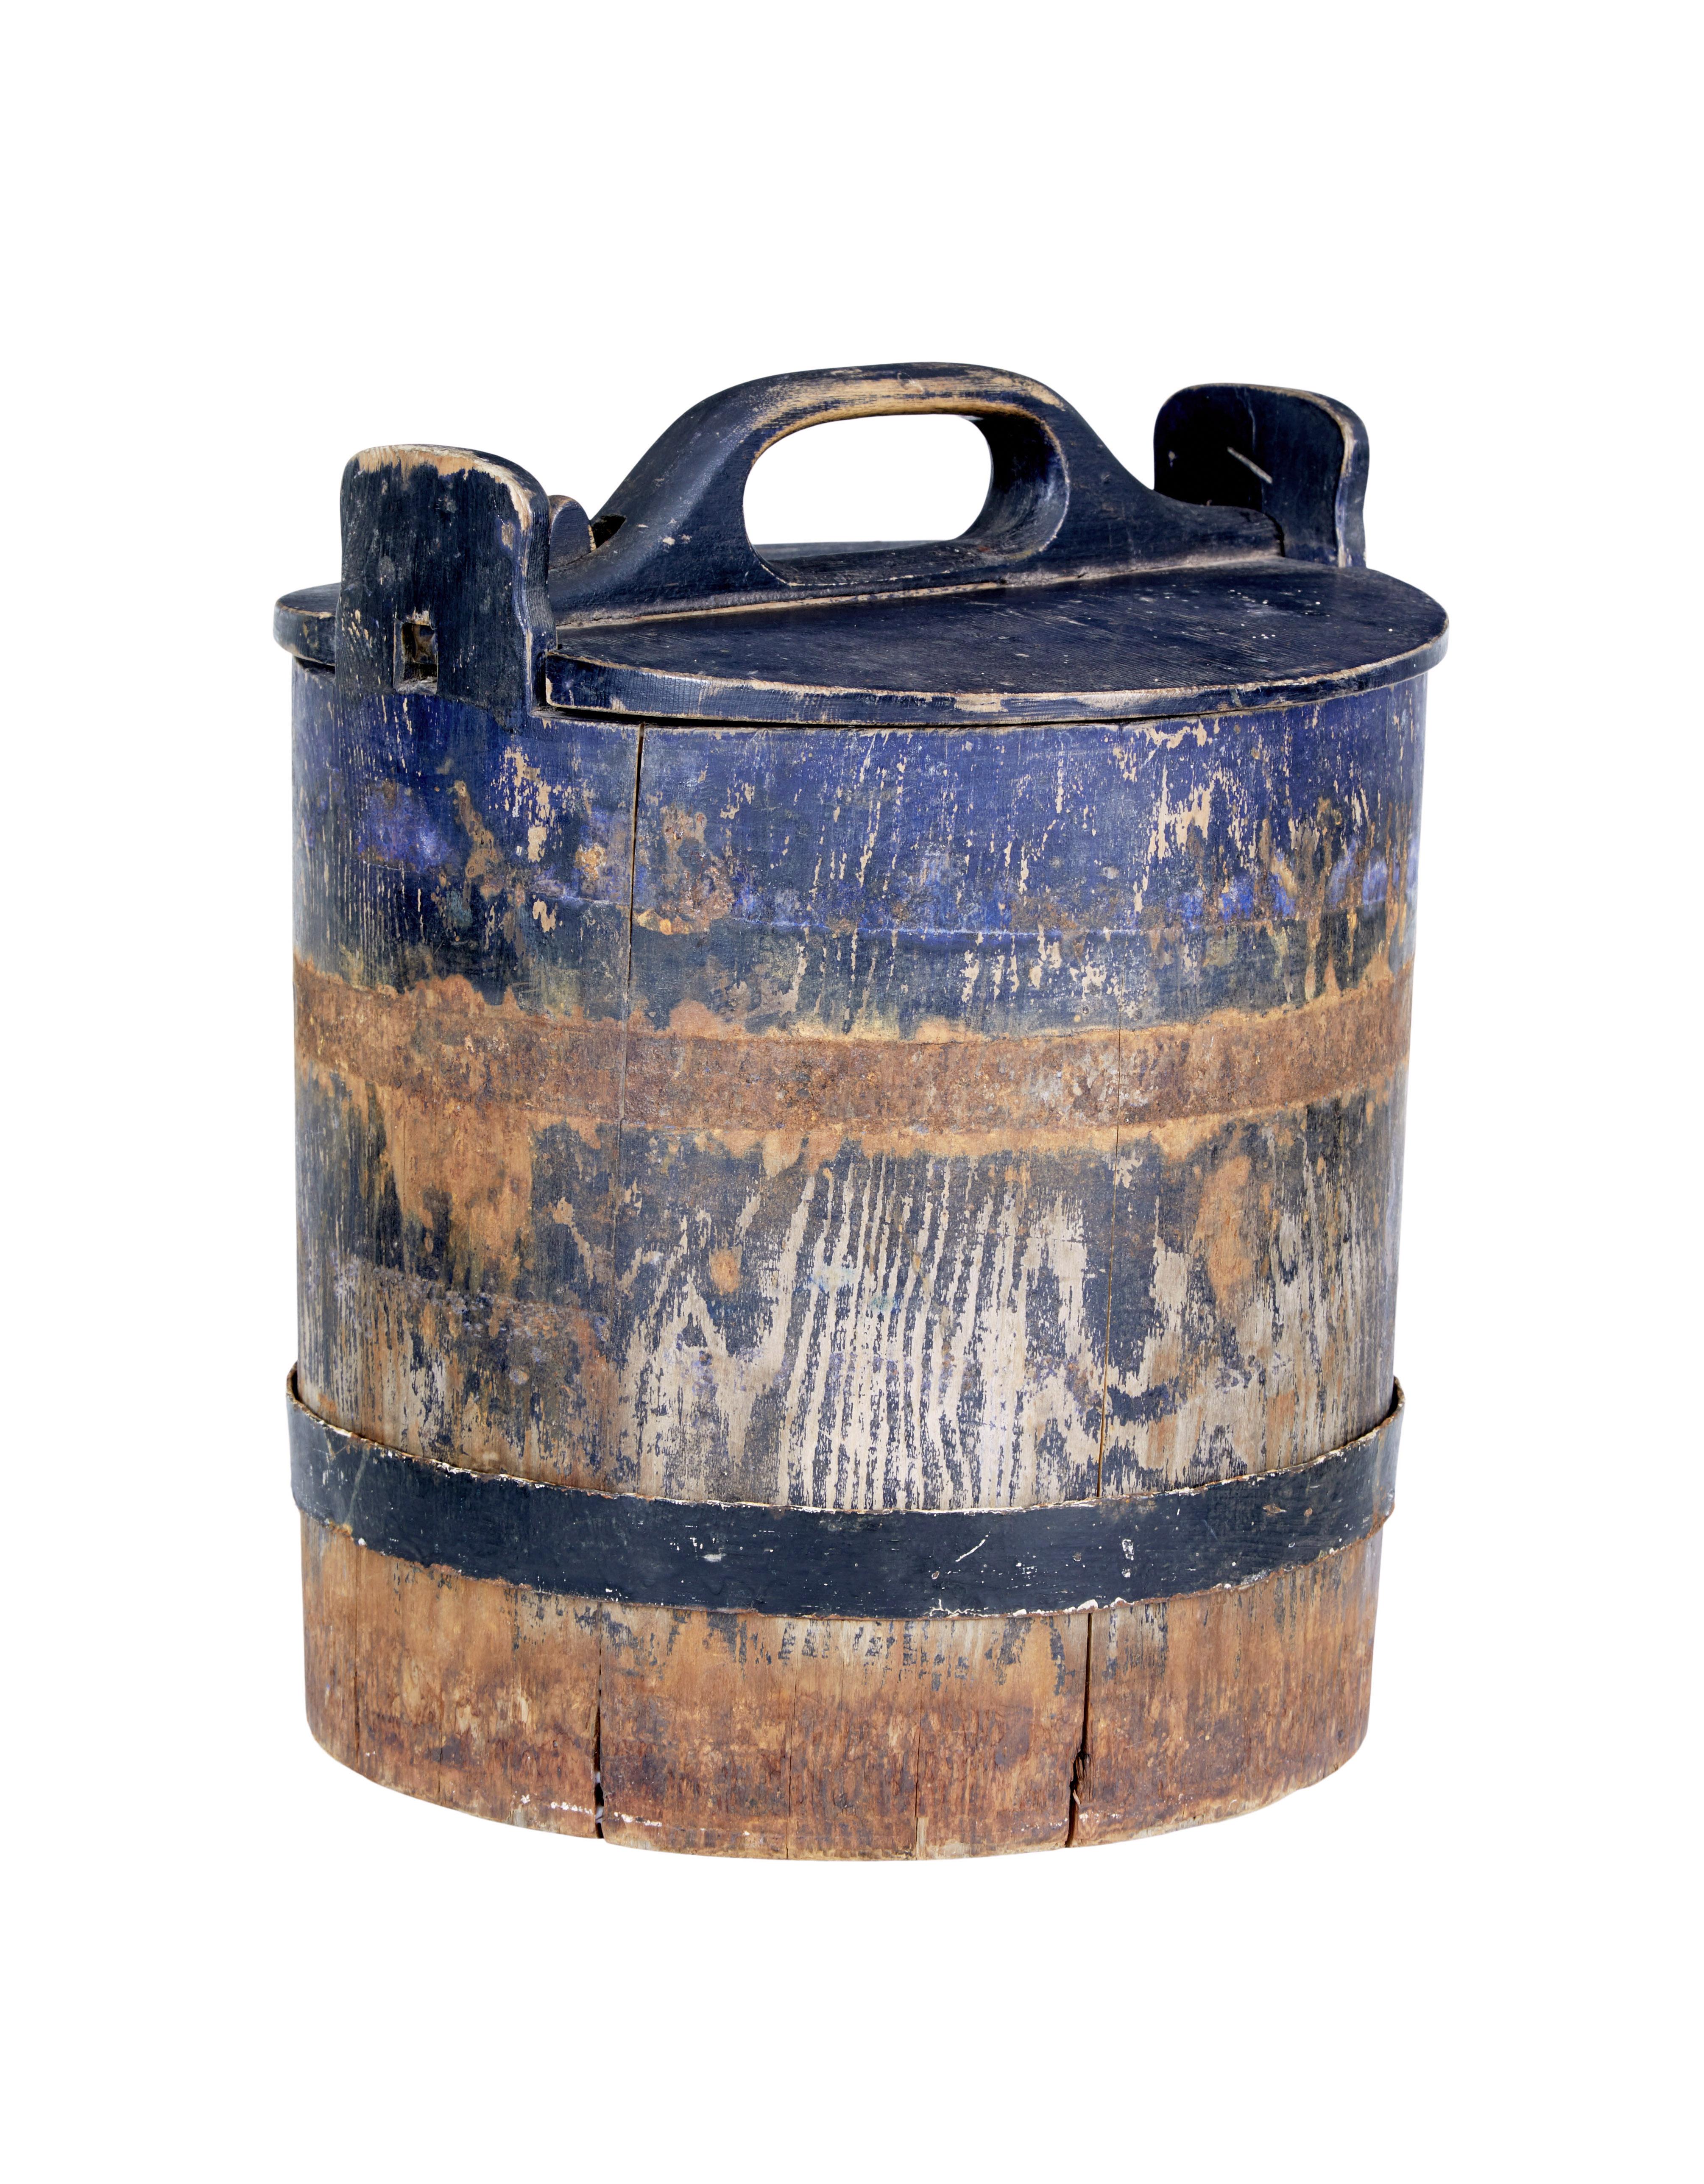 Rustikaler Vorratsbehälter aus schwedischer Kiefer aus der Mitte des 19. Jahrhunderts, um 1860.

Sehr schönes, seltenes Stück, das intakt zu finden ist. Hergestellt aus Kiefer mit originaler blauer Farbe, 1 originaler Metallbügel, der andere ist